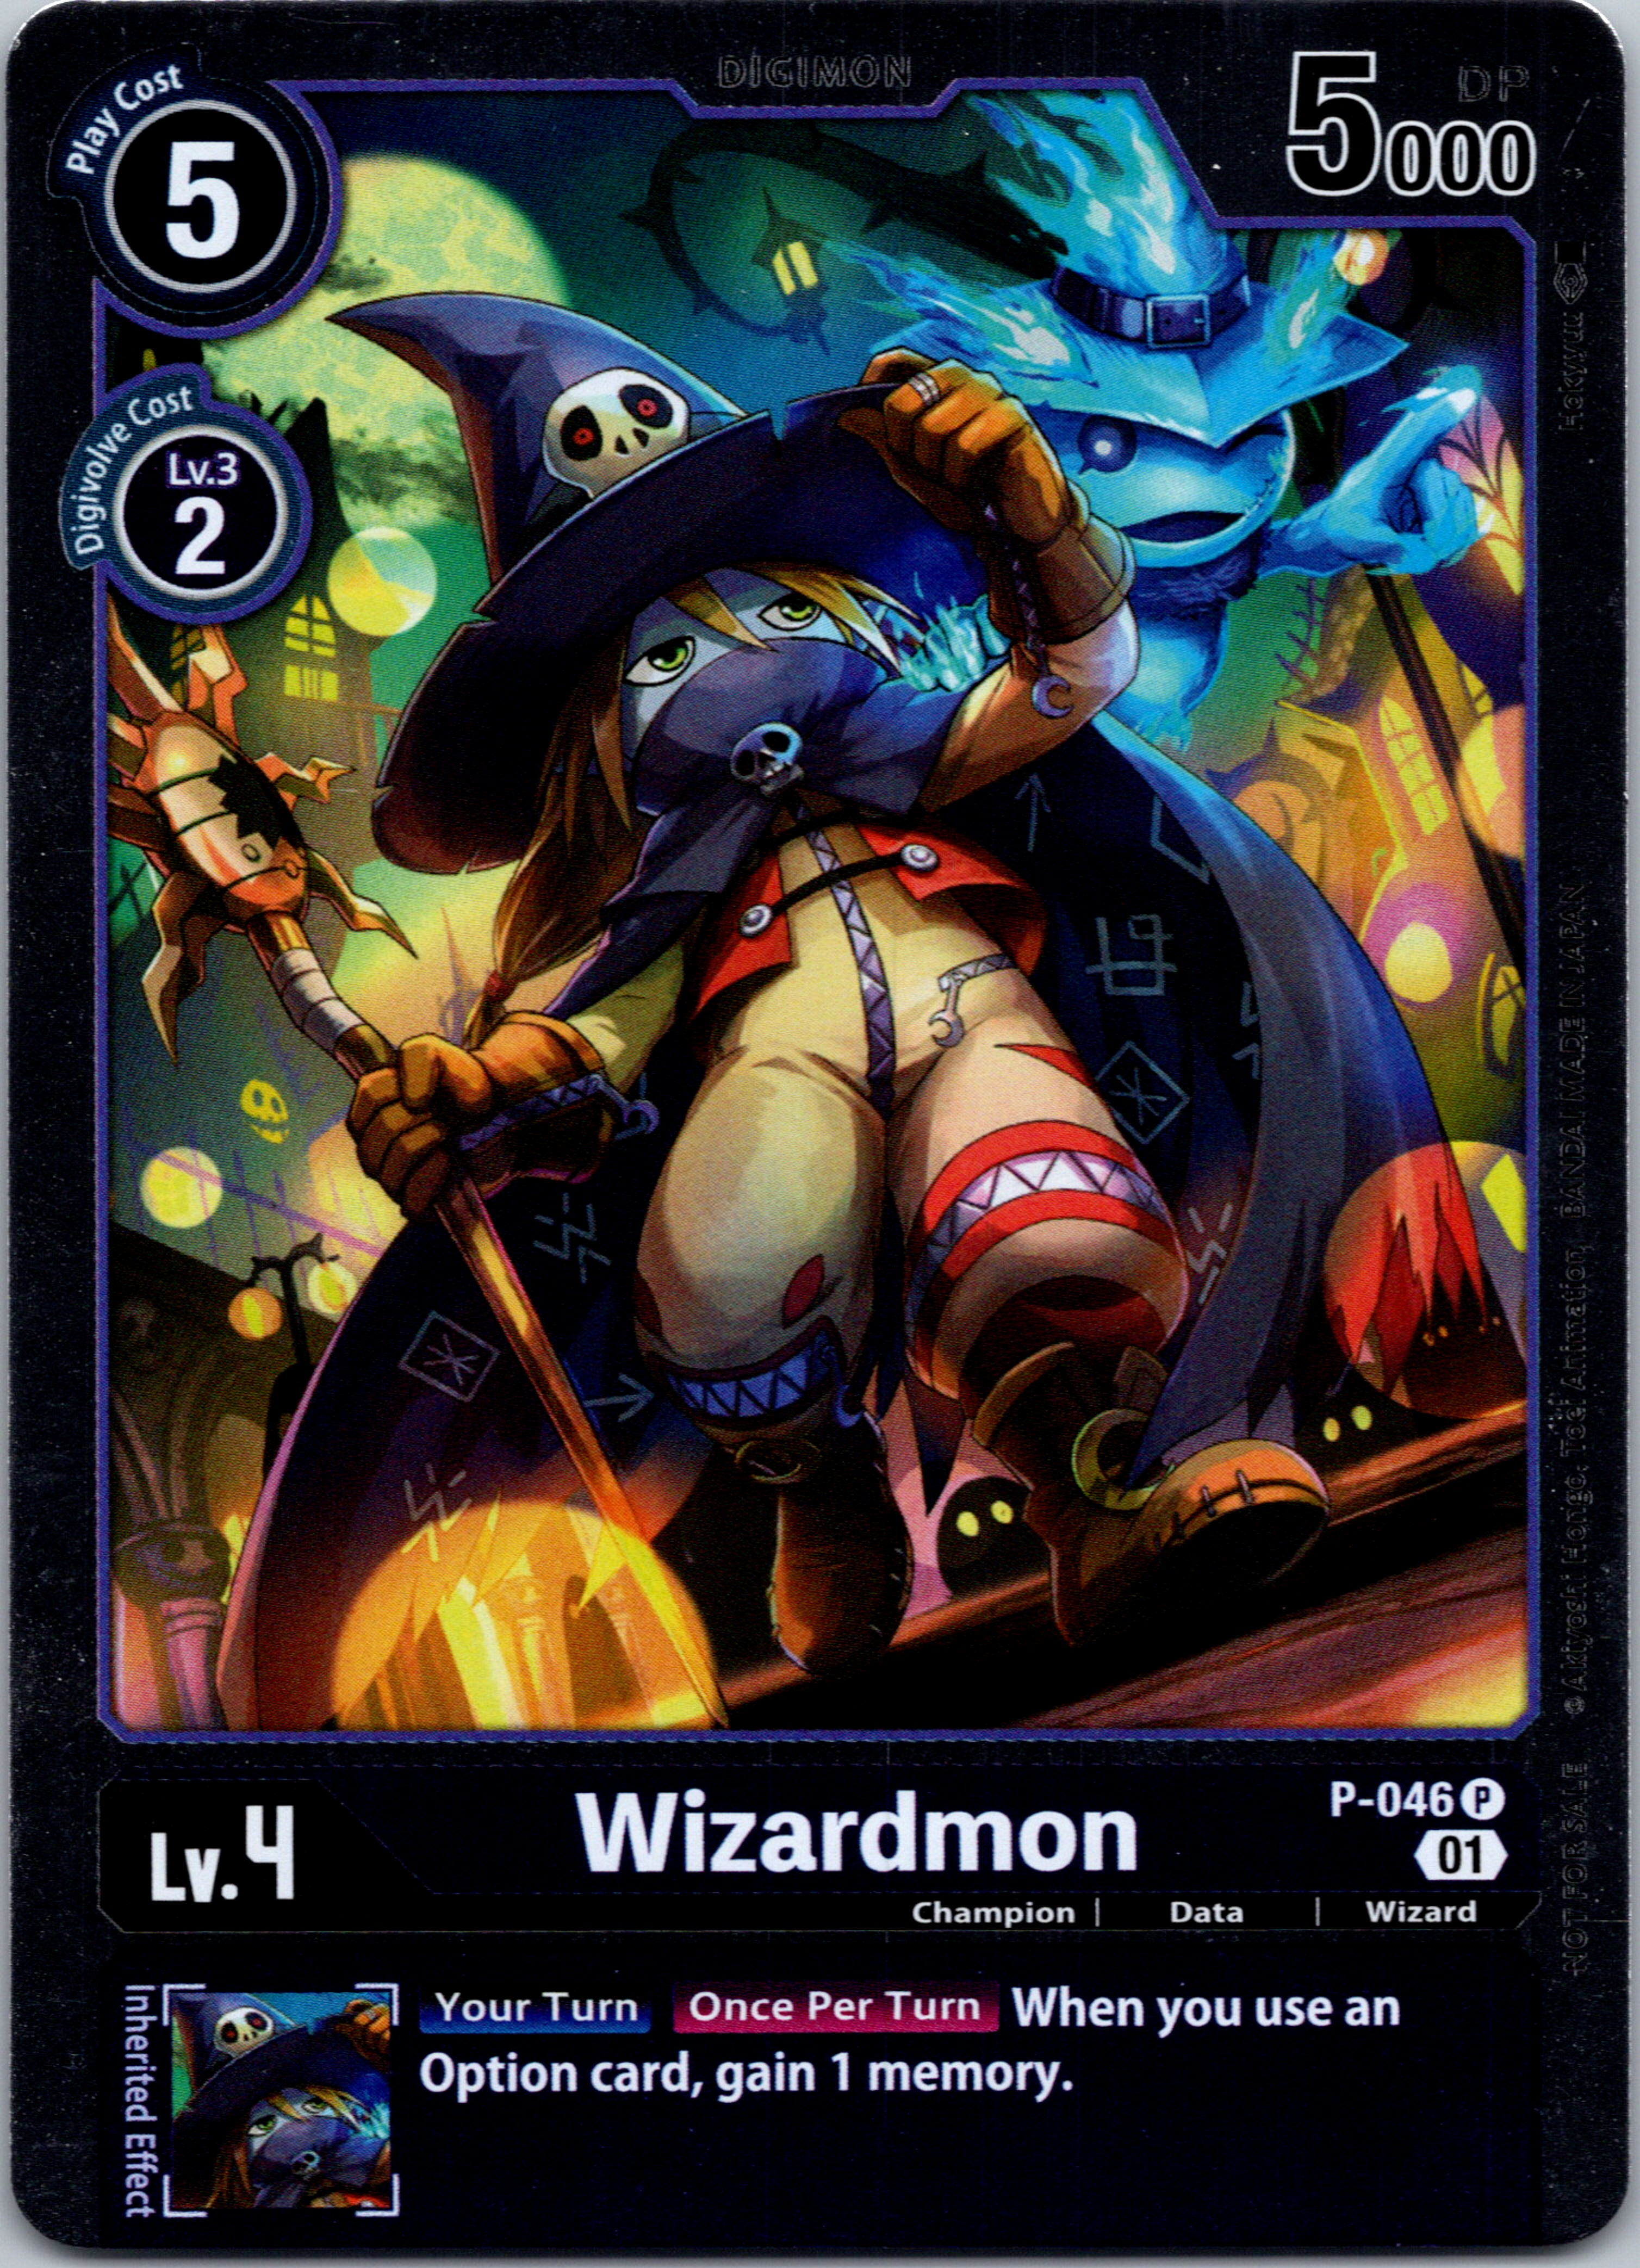 Wizardmon [P-046] [Digimon Promotion Cards] Foil